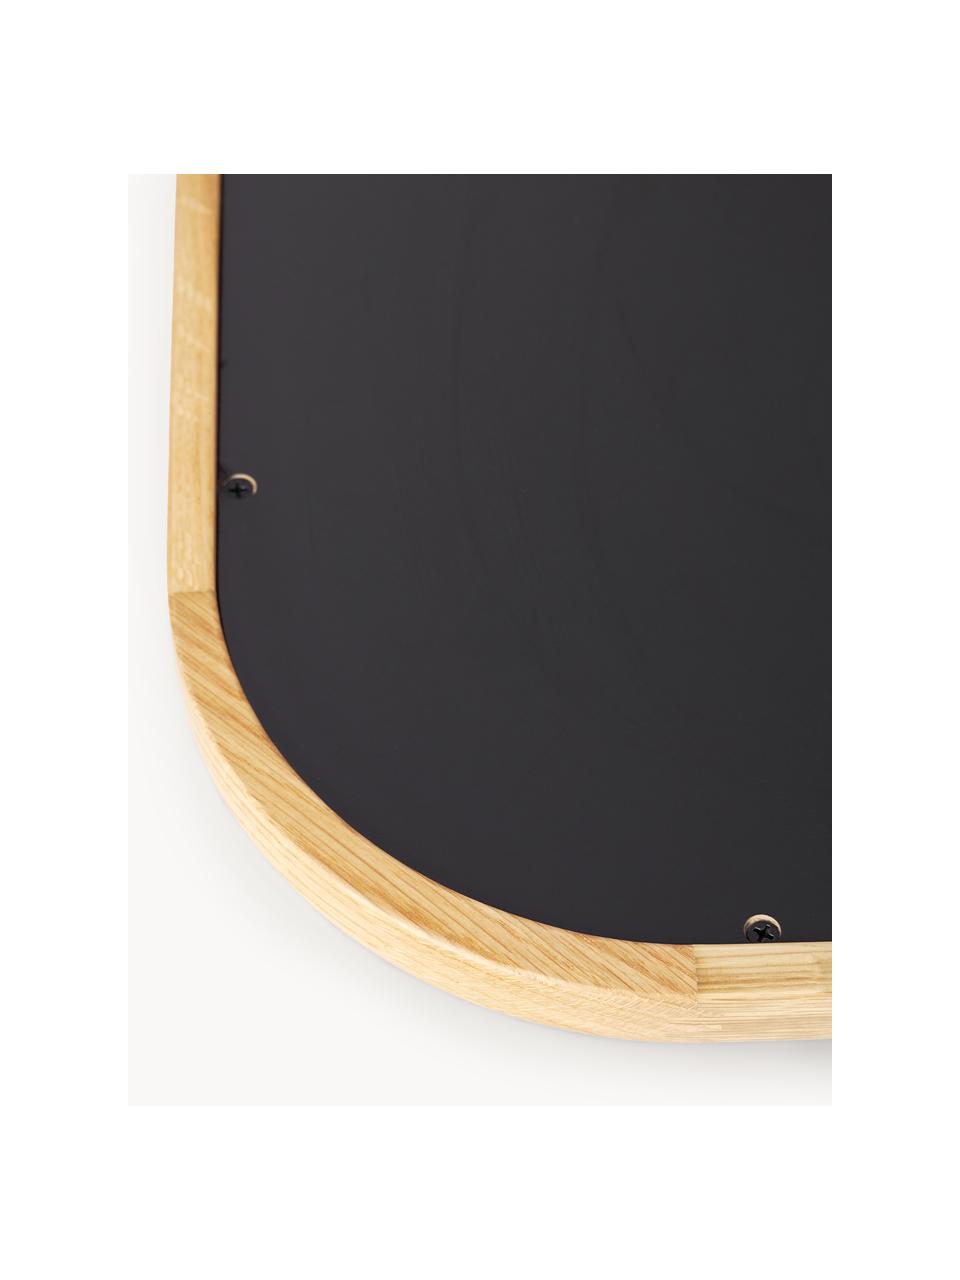 Velké naklápěcí zrcadlo s dubovým rámem Levan, Dubové dřevo, Š 80 cm, V 180 cm